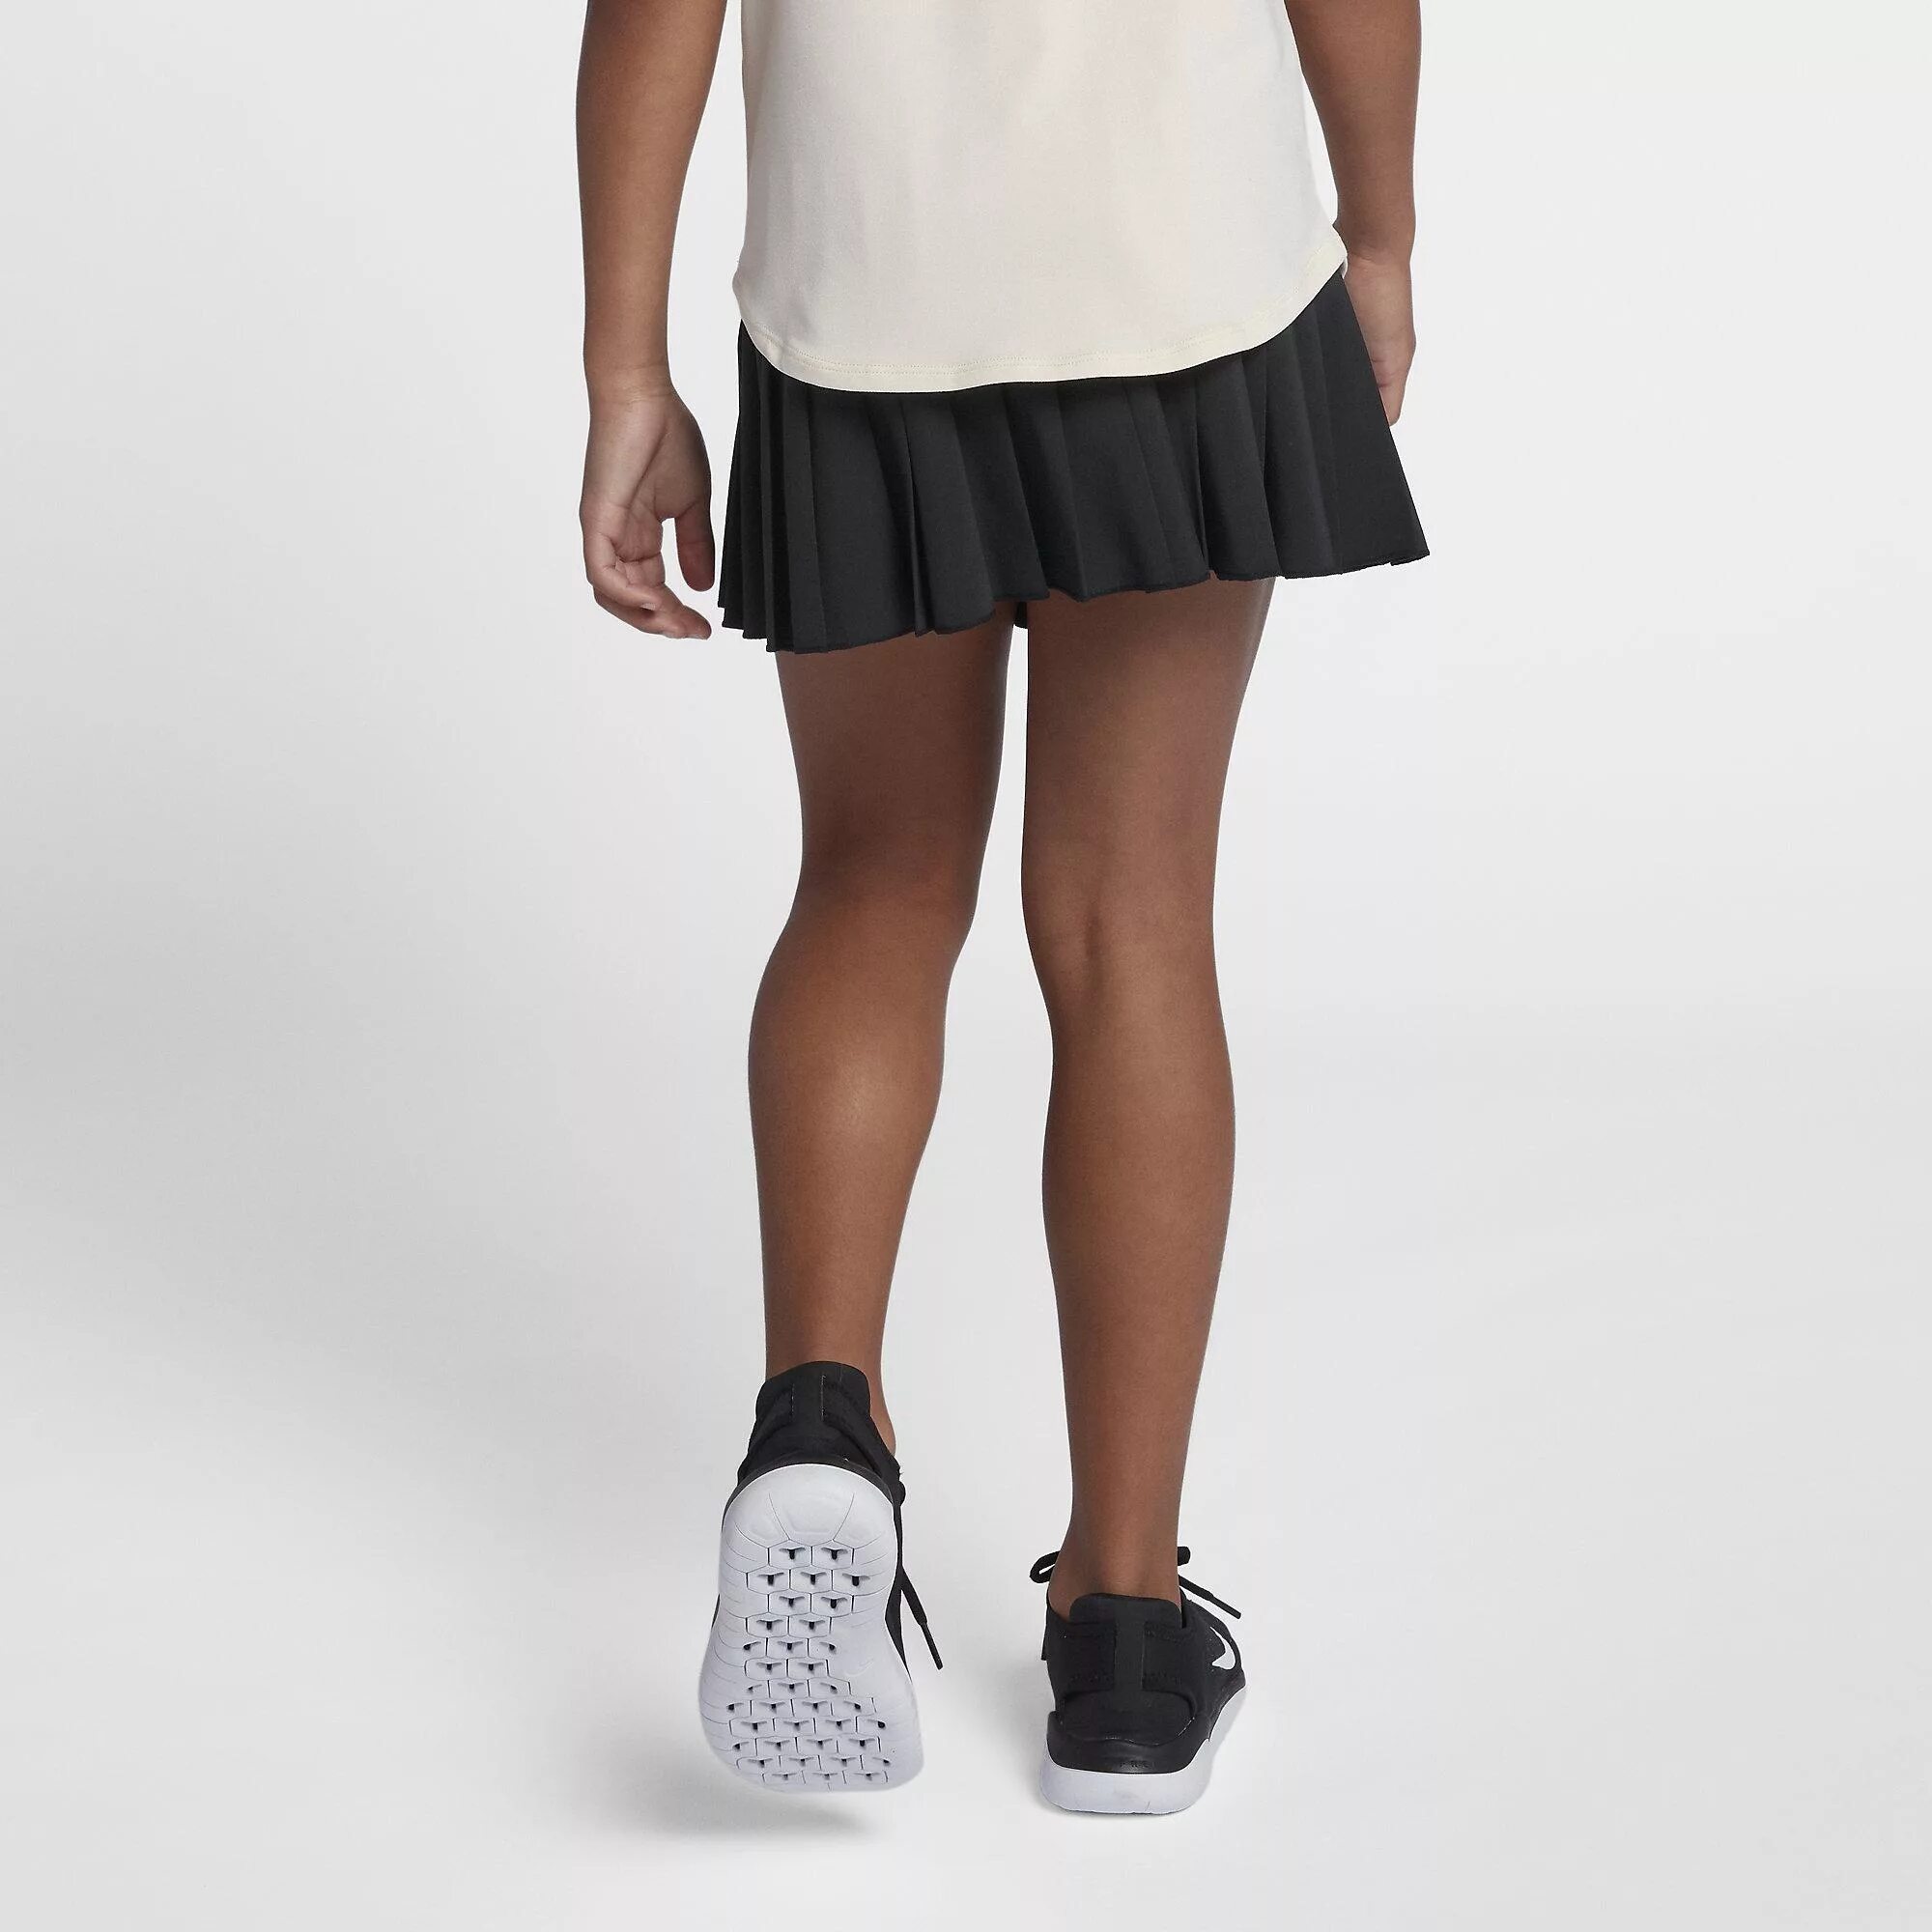 Юбка теннисная Nike Victory для девочек. Юбка найк для тенниса. Теннисные юбки в школу для девочек. Школьная юбка теннисная для девочек. Теннисные юбки в школу